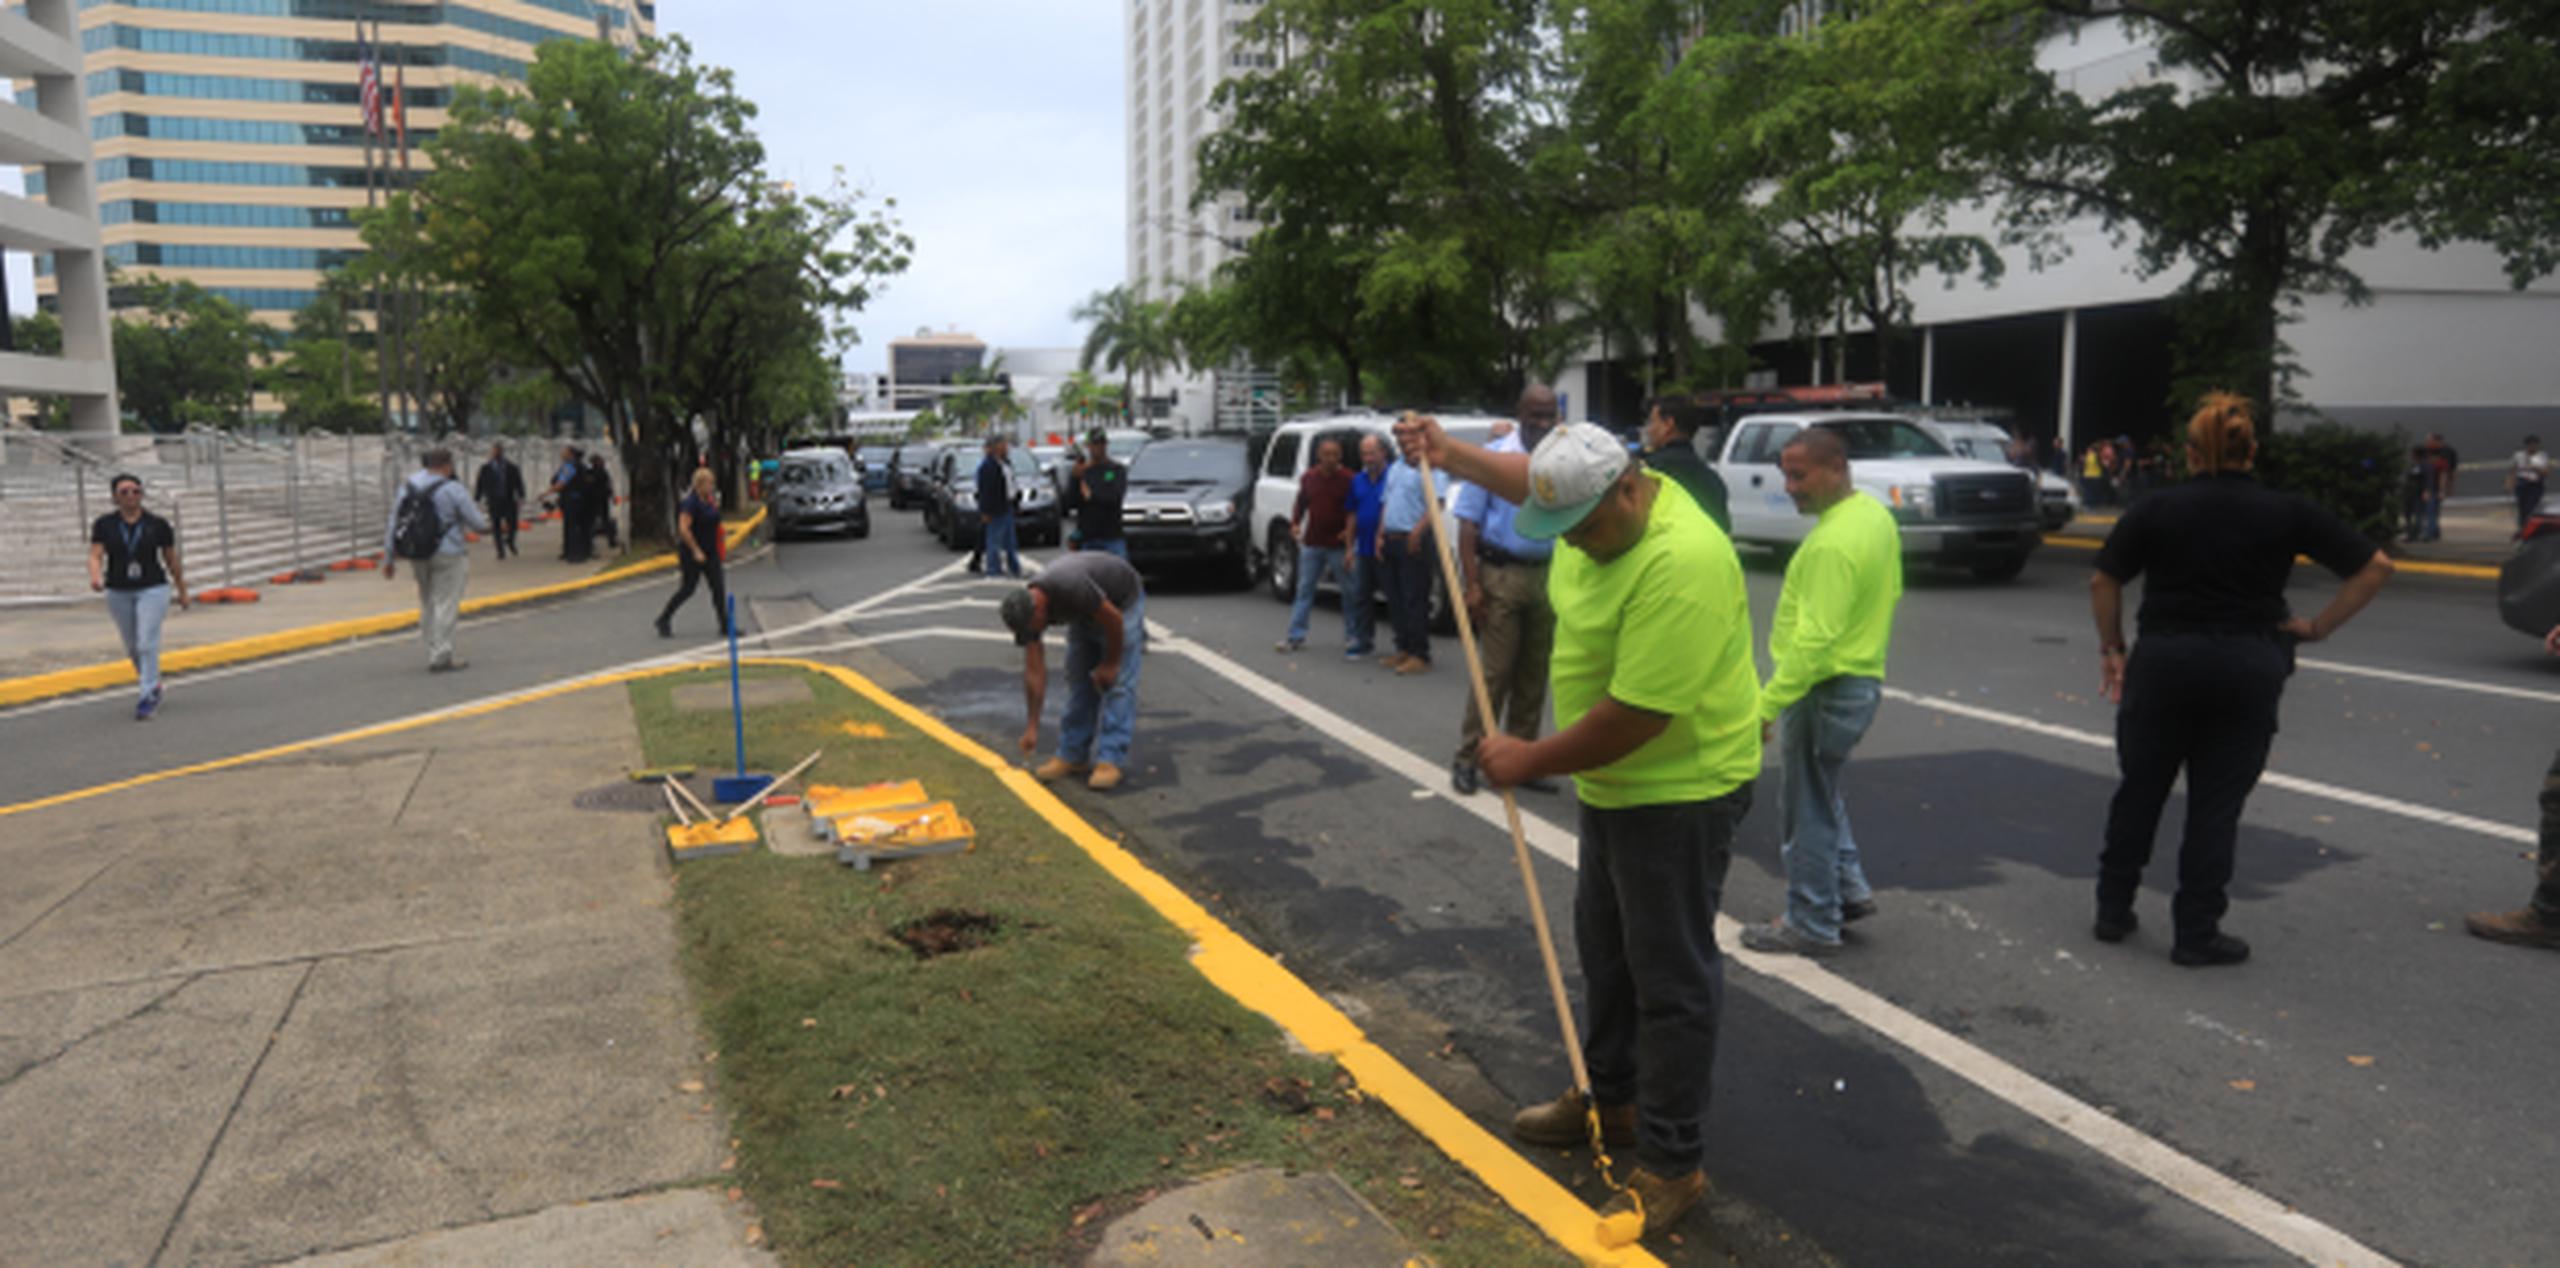 El gobernador Ricardo Rosselló ofreció enviar brigadas de limpieza a la UPR, tal como hizo en la zona de Hato Rey luego de los disturbios tras la protesta del 1 de mayo. (Archivo)